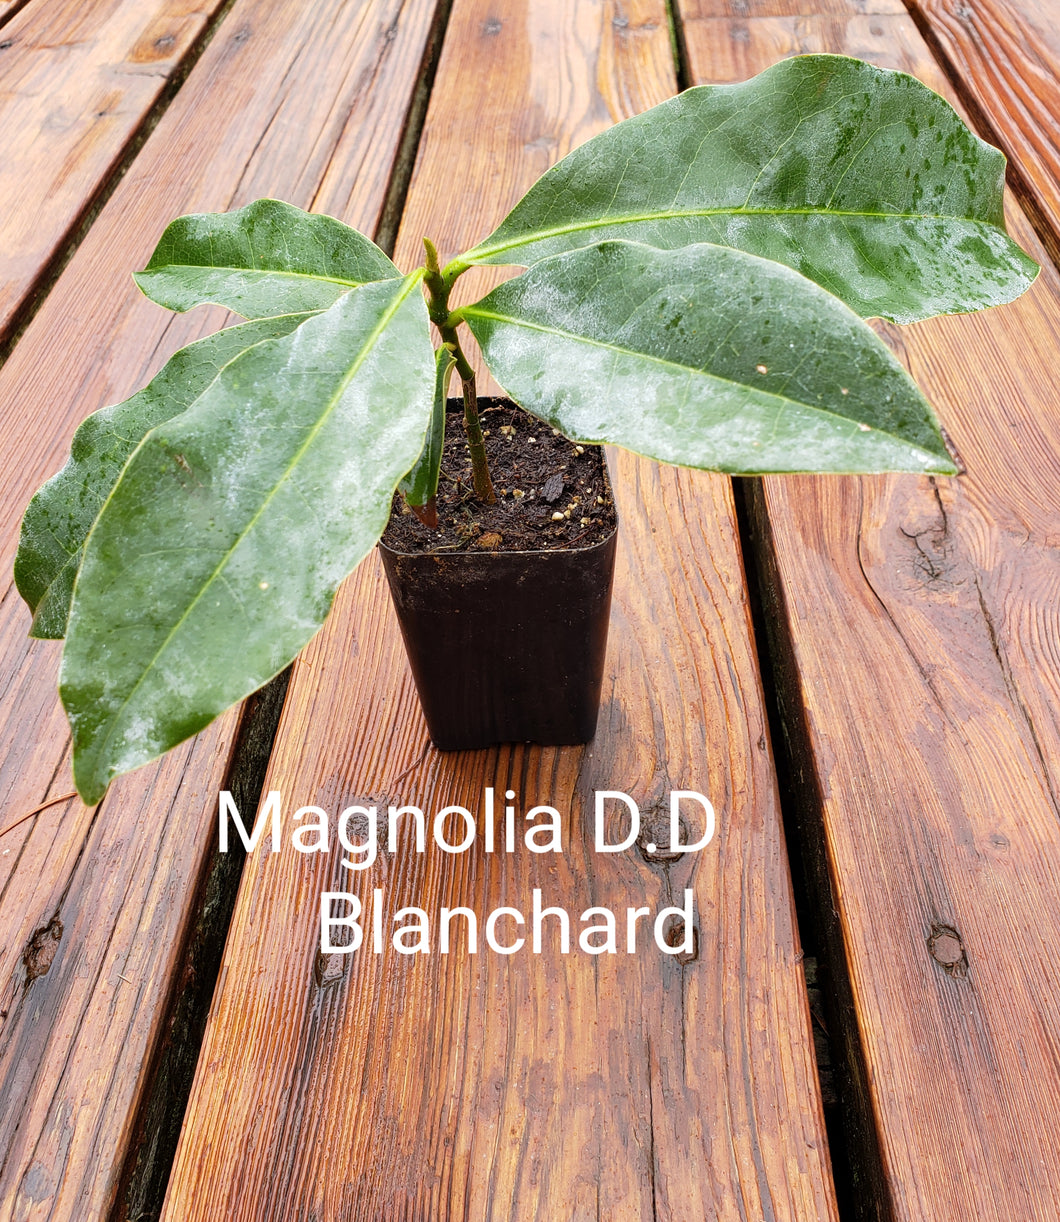 Magnolia 'D.D. Blanchard'